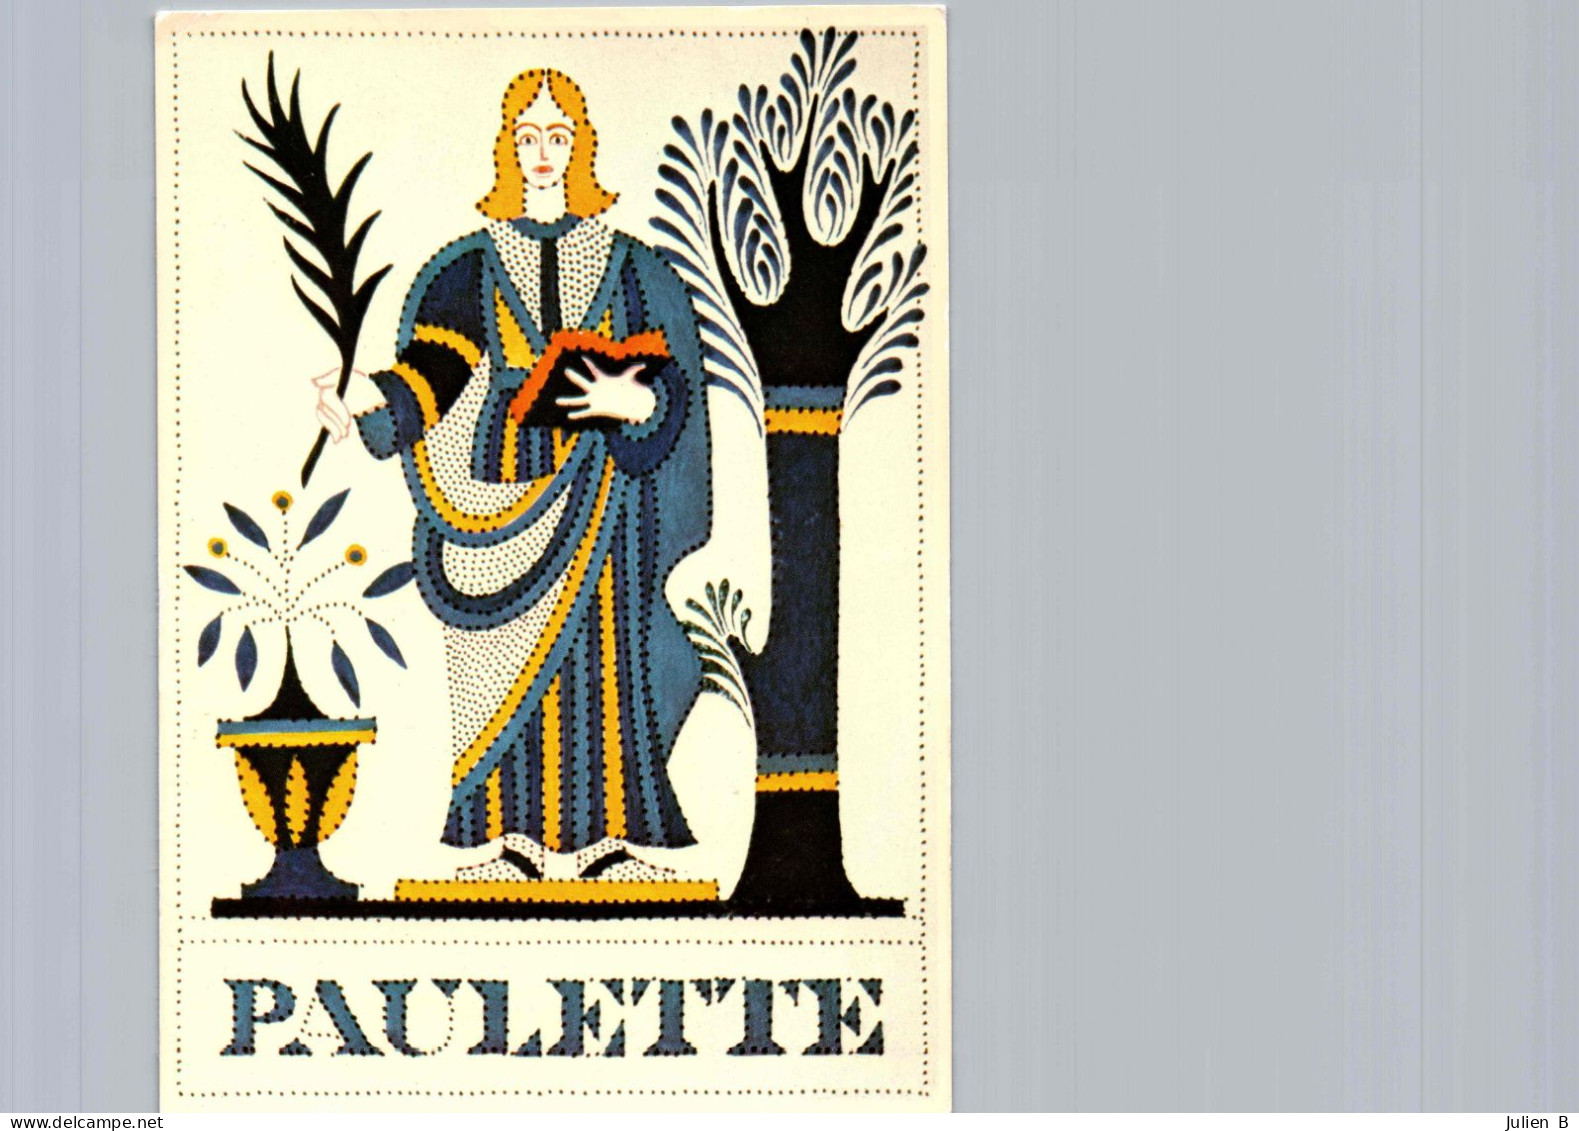 Paulette, Edition Betula - Nombres